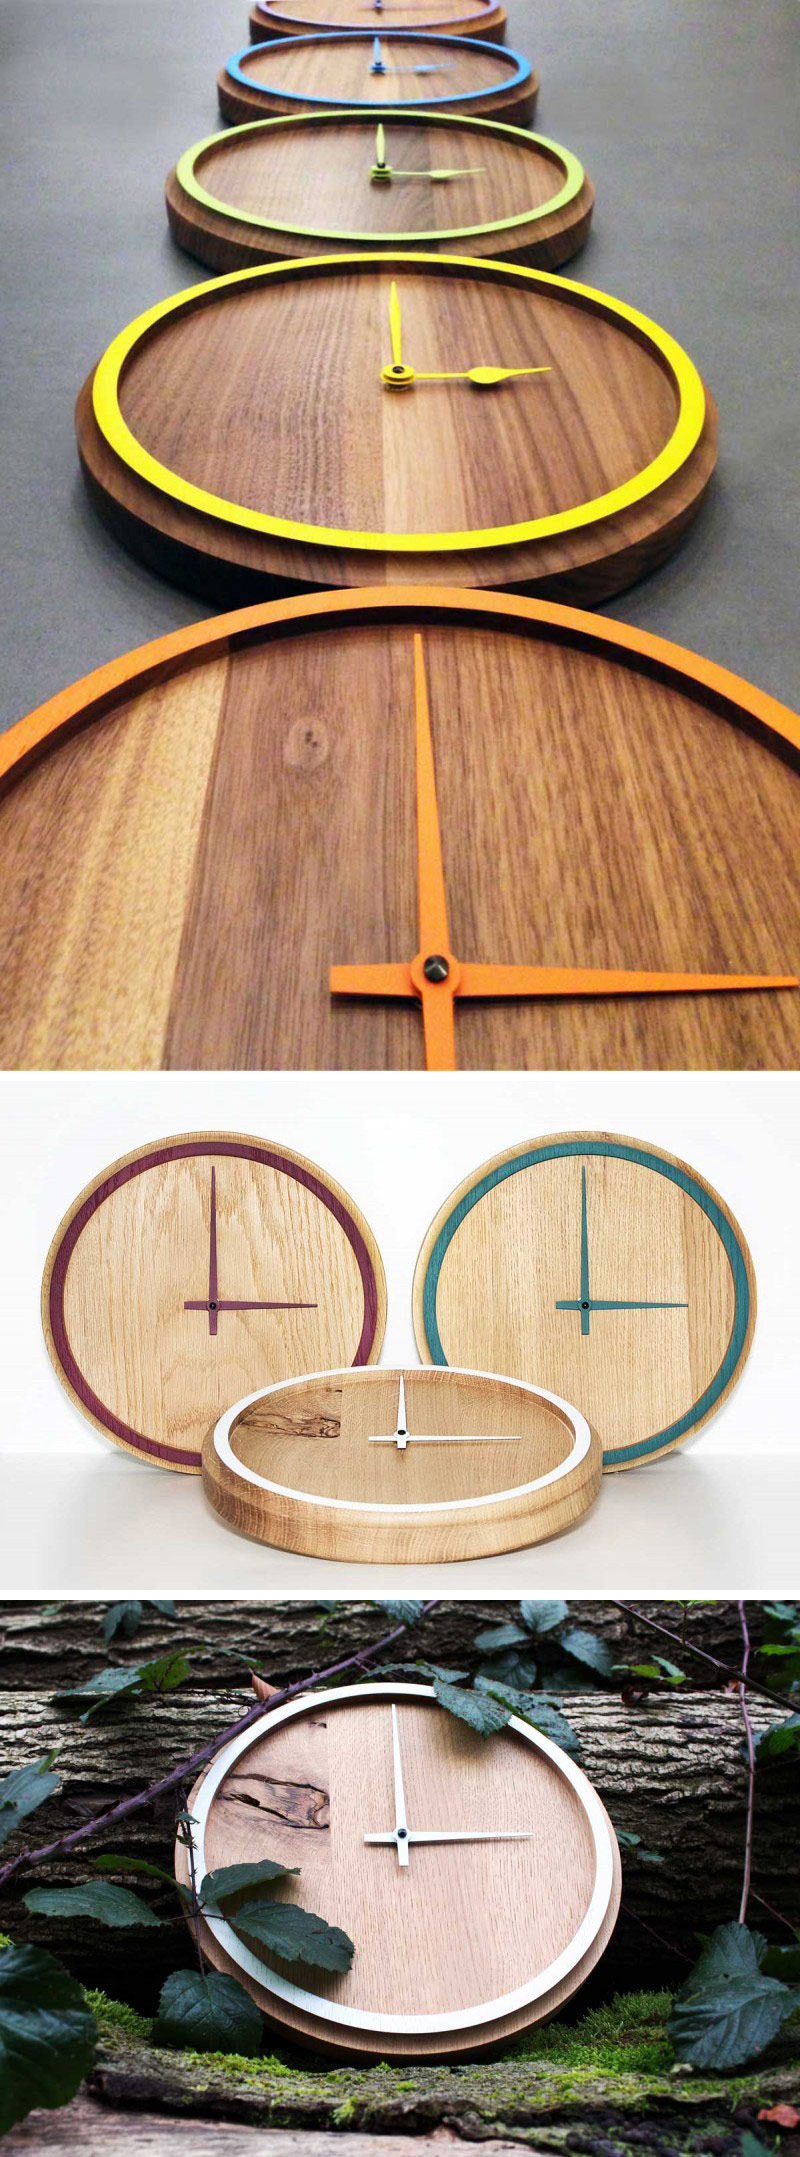 Стрелки этих часов из цельного дерева сочетаются с красочными ободами, чтобы часы были простыми, забавными и современными. #ModernWoodClock #WallClock #ModernDecor #ModernClock